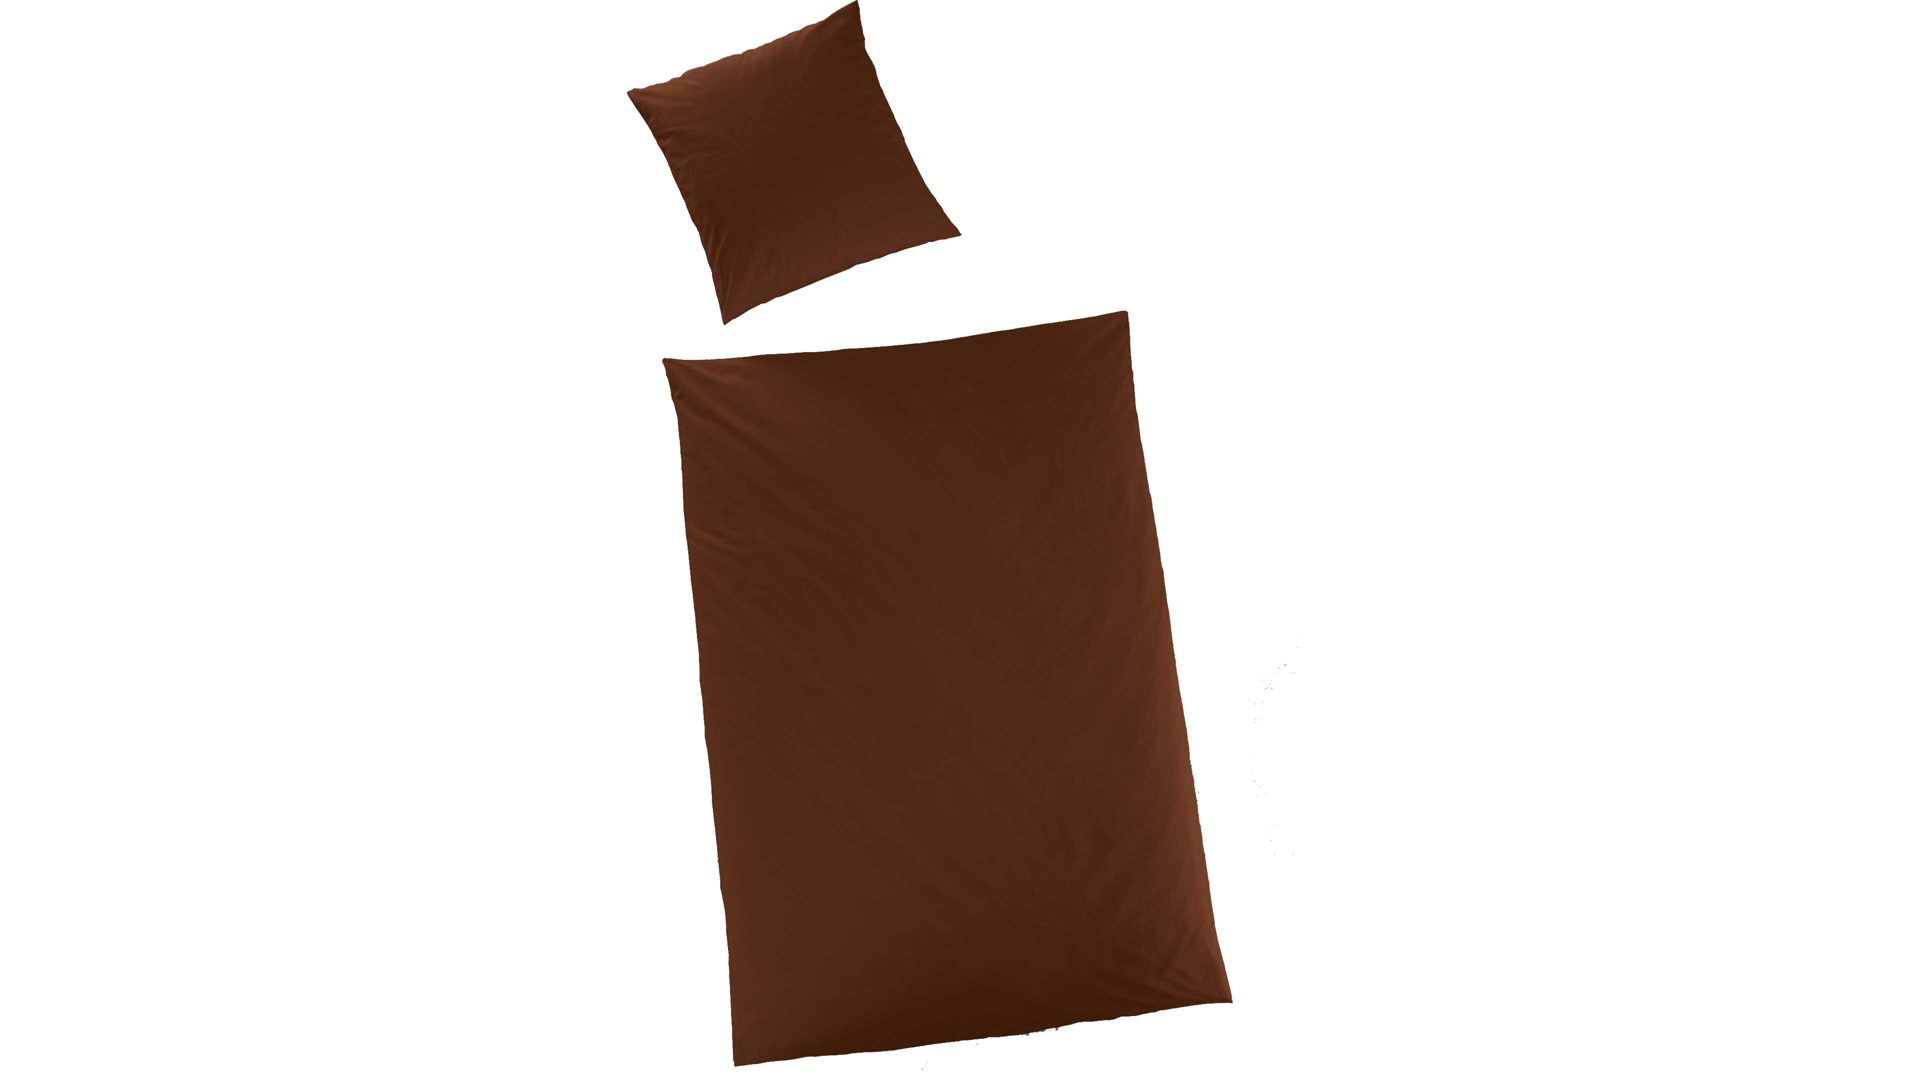 Bettwäsche-Set H.g. hahn haustextilien aus Stoff in Braun HAHN Luxus-Satin-Bettwäsche Sempre brauner Baumwollsatin – zweiteilig, ca. 155 x 200 cm